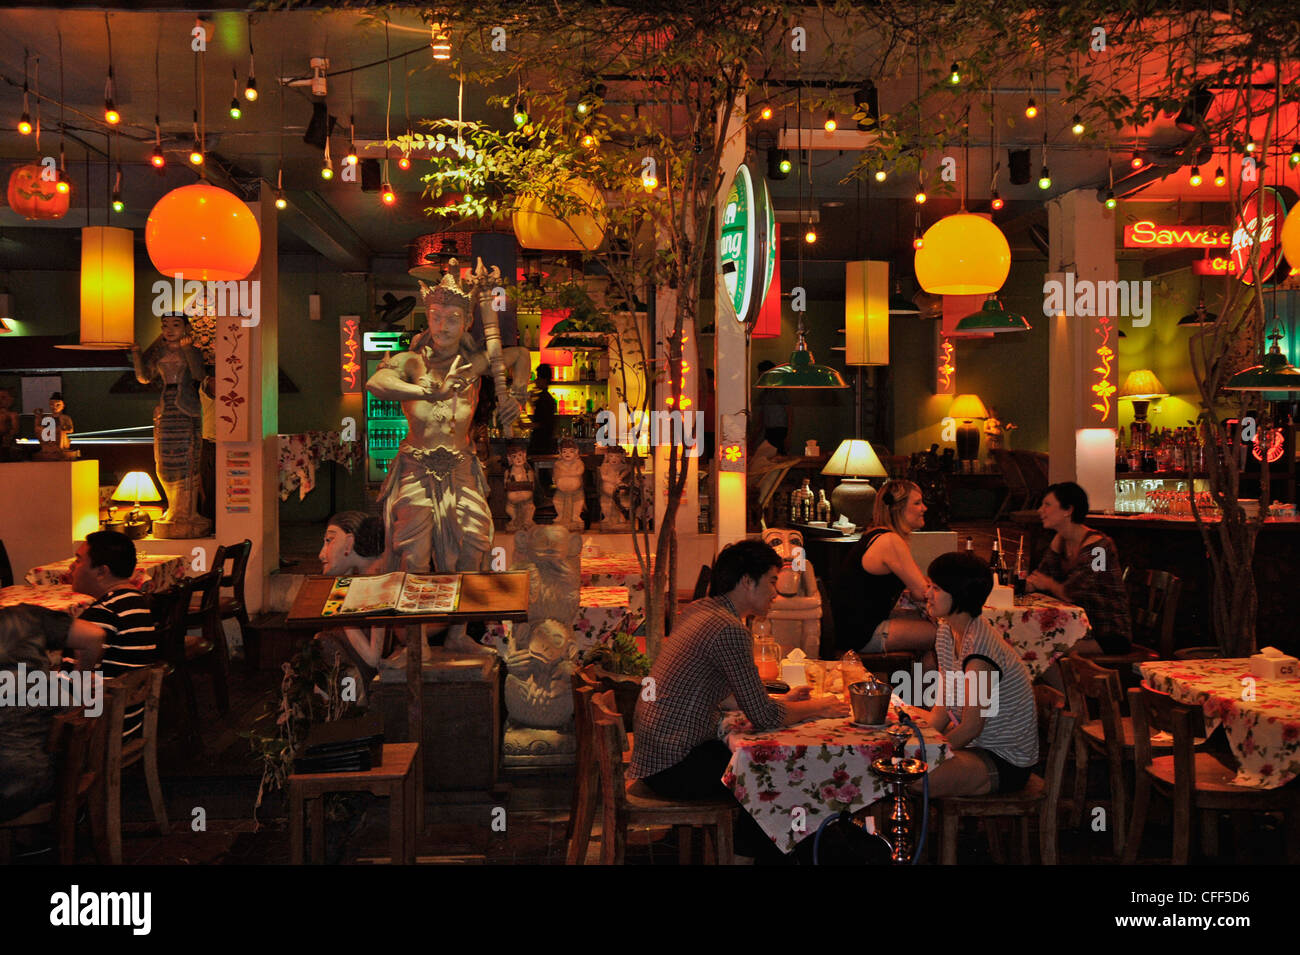 Turista nella parte anteriore del ristorante, seduti ai tavoli, Khao San Road Banglampoo, Bangkok, Thailandia, Asia Foto Stock